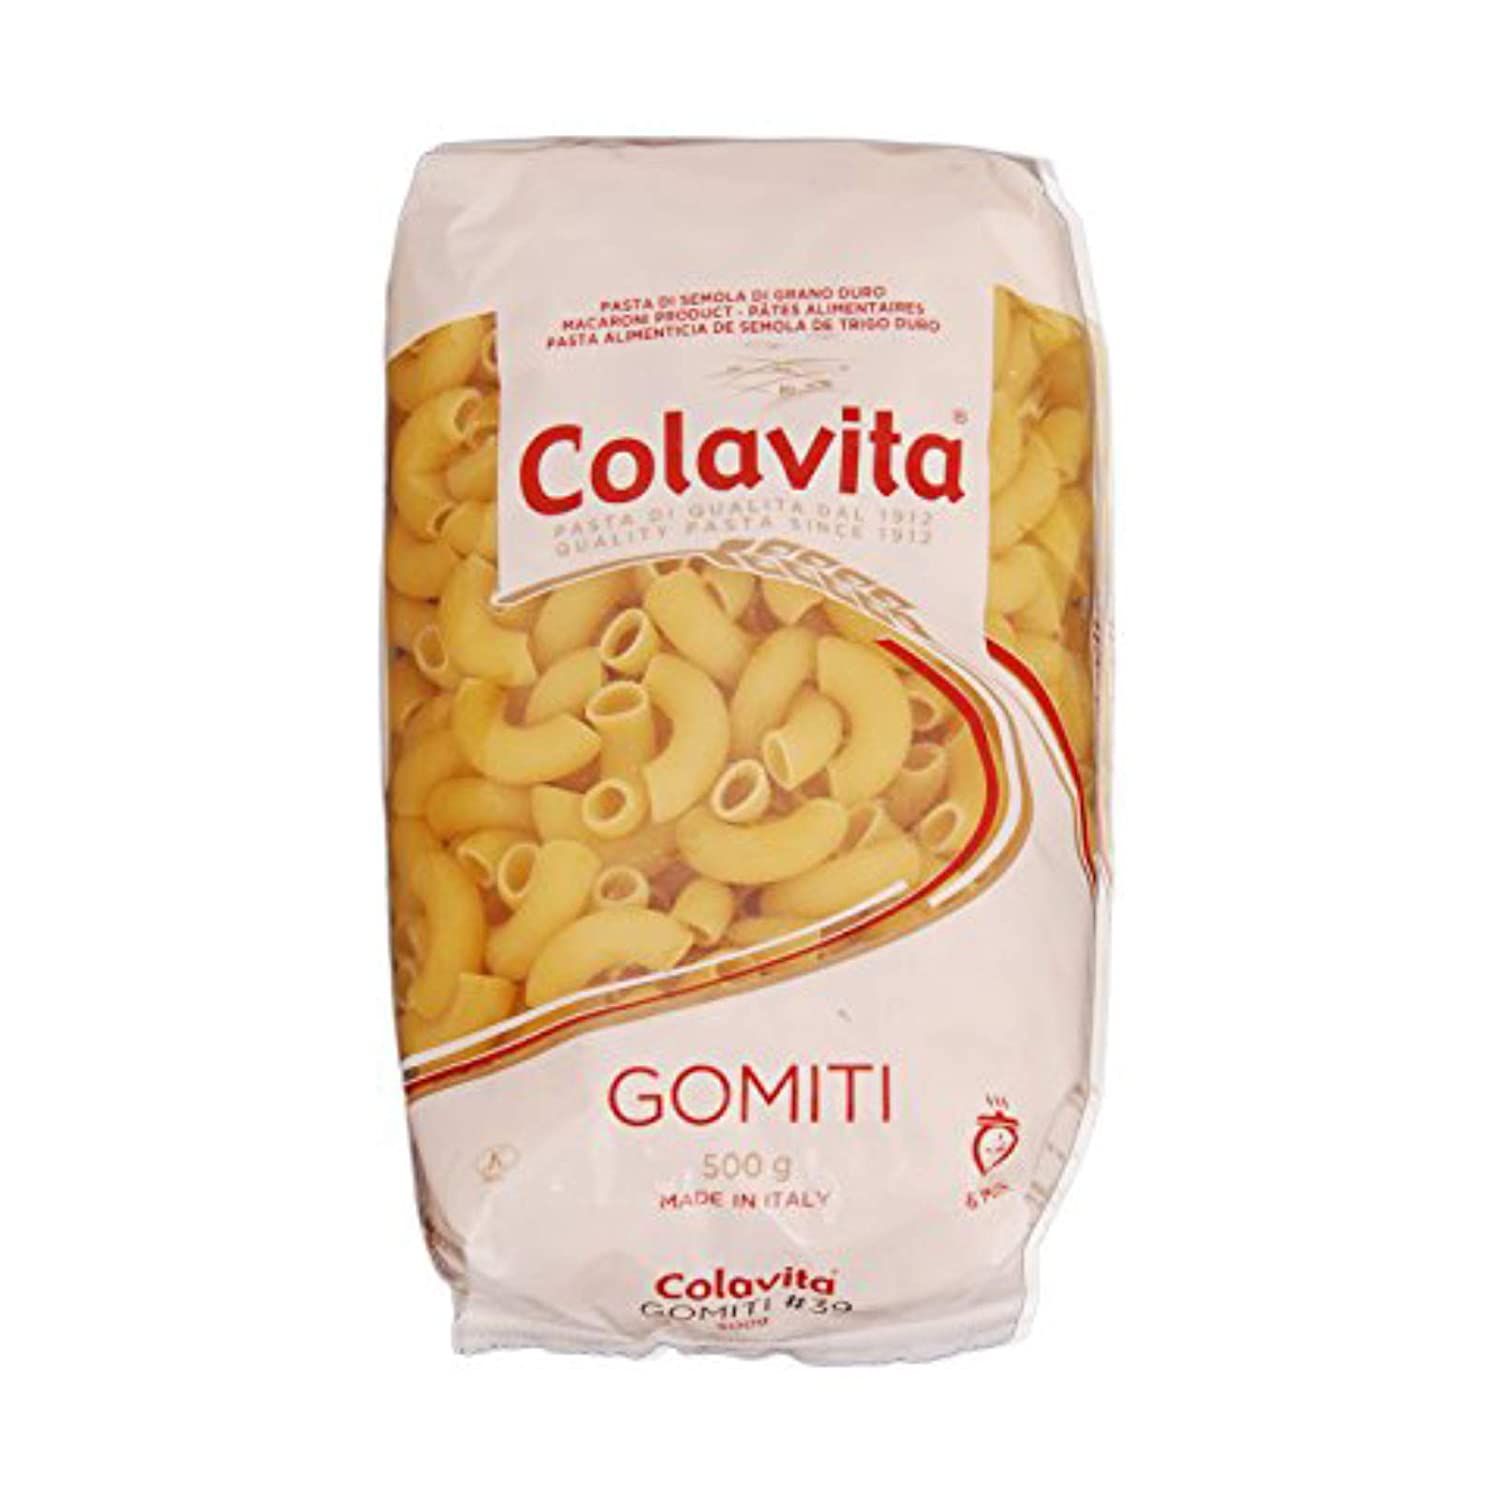 Colavita Gomiti Italian Pasta Image